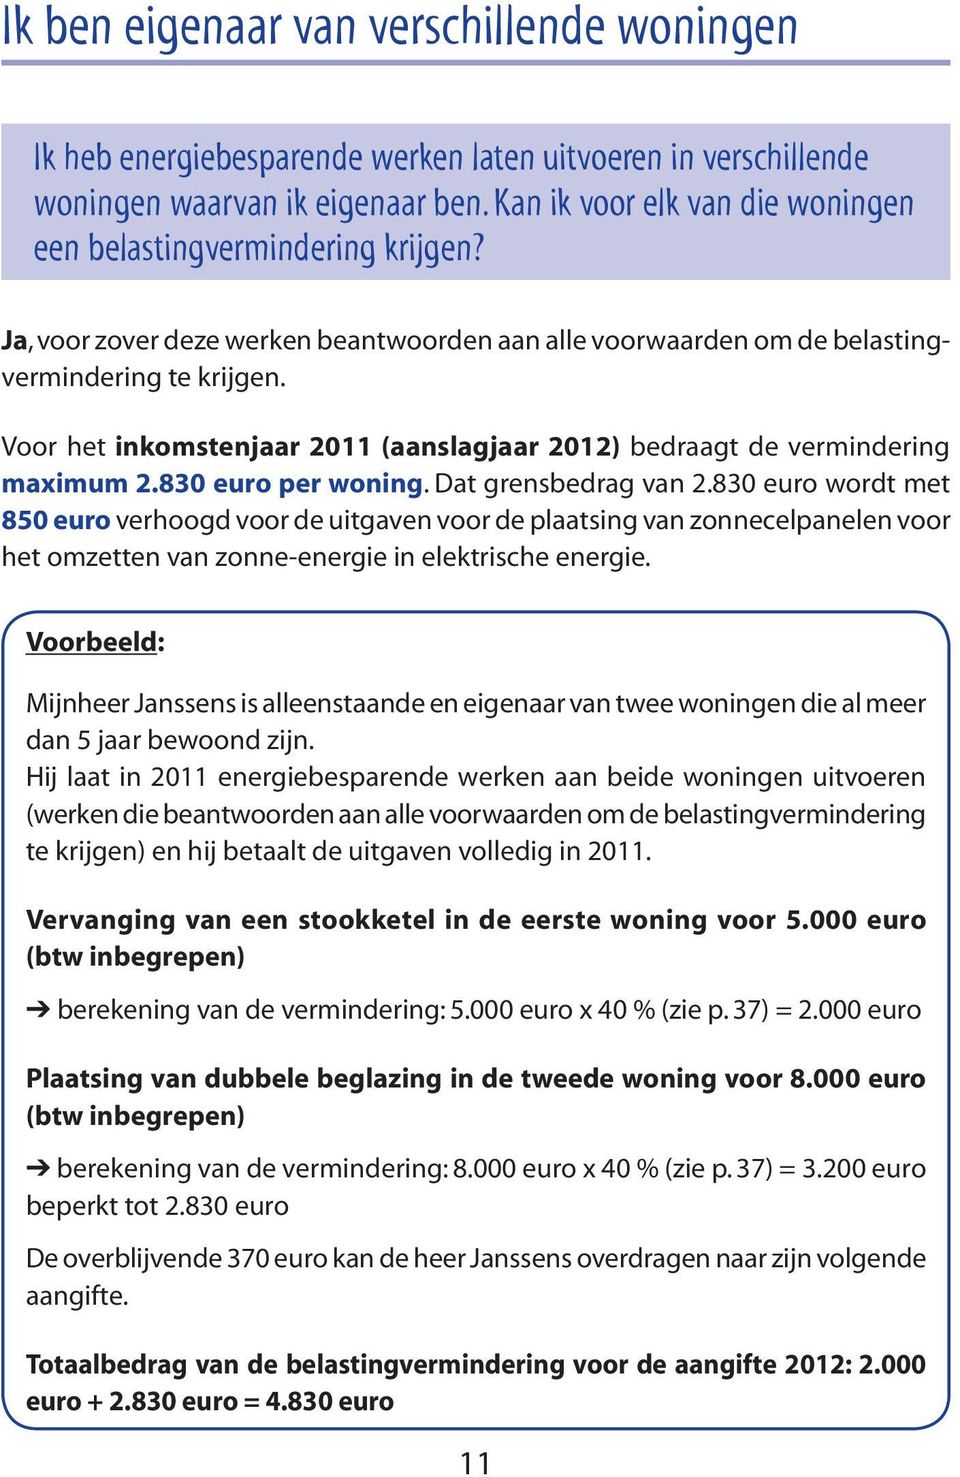 Voor het inkomstenjaar 2011 (aanslagjaar 2012) bedraagt de vermindering maximum 2.830 euro per woning. Dat grensbedrag van 2.